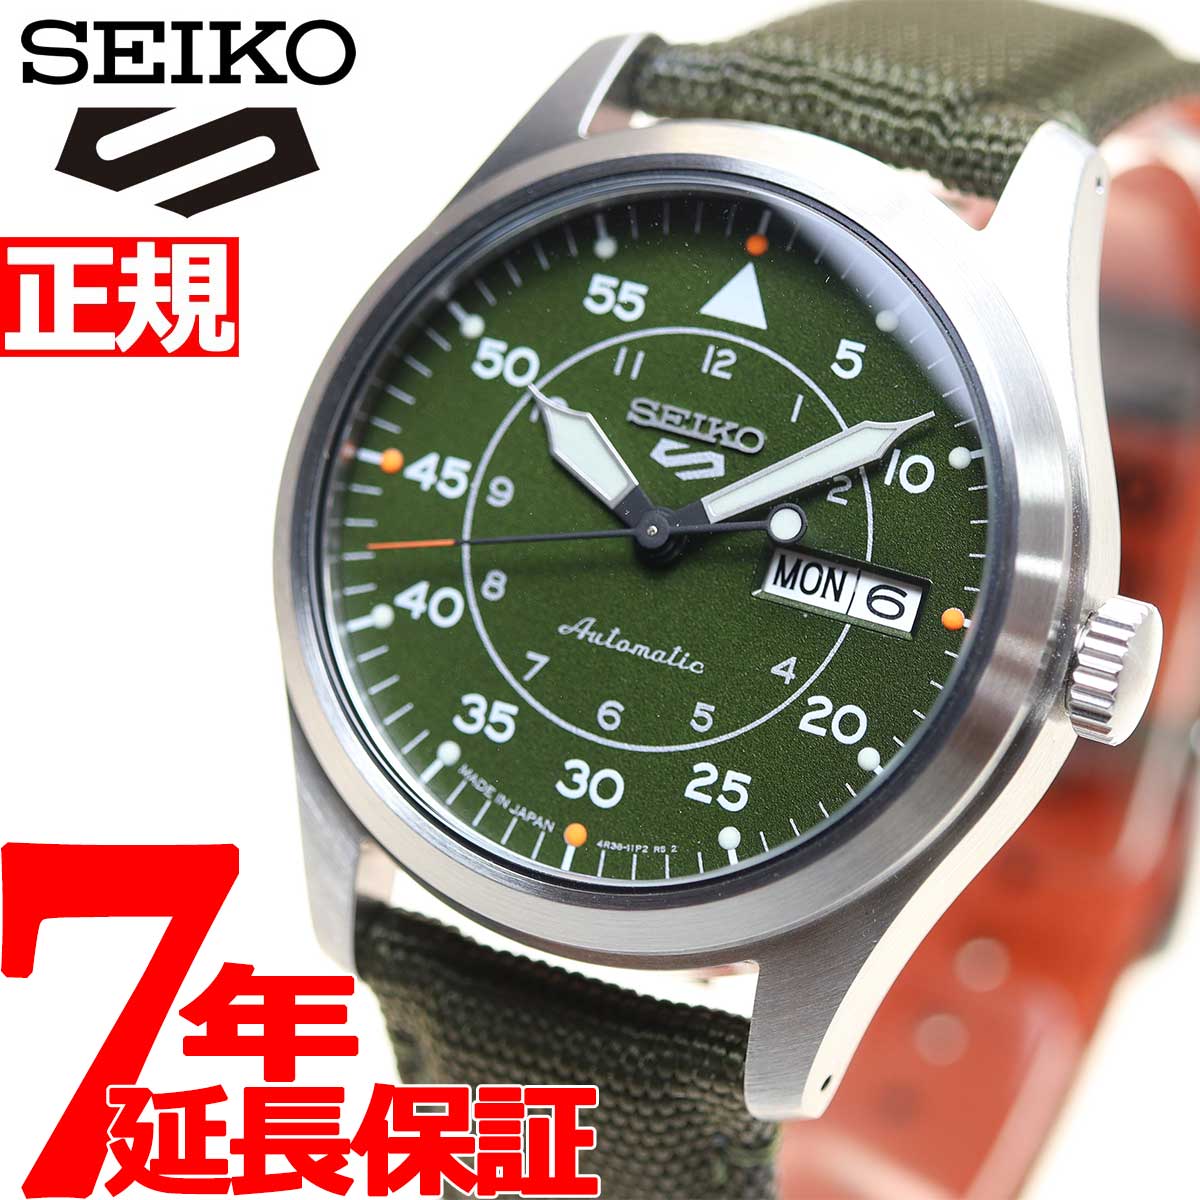 セイコー SEIKO 腕時計 メンズ SBSA141 セイコー 5スポーツ フィールド ストリート スタイル Field Street Style 自動巻き（4R36/手巻き付） カーキxカーキ アナログ表示